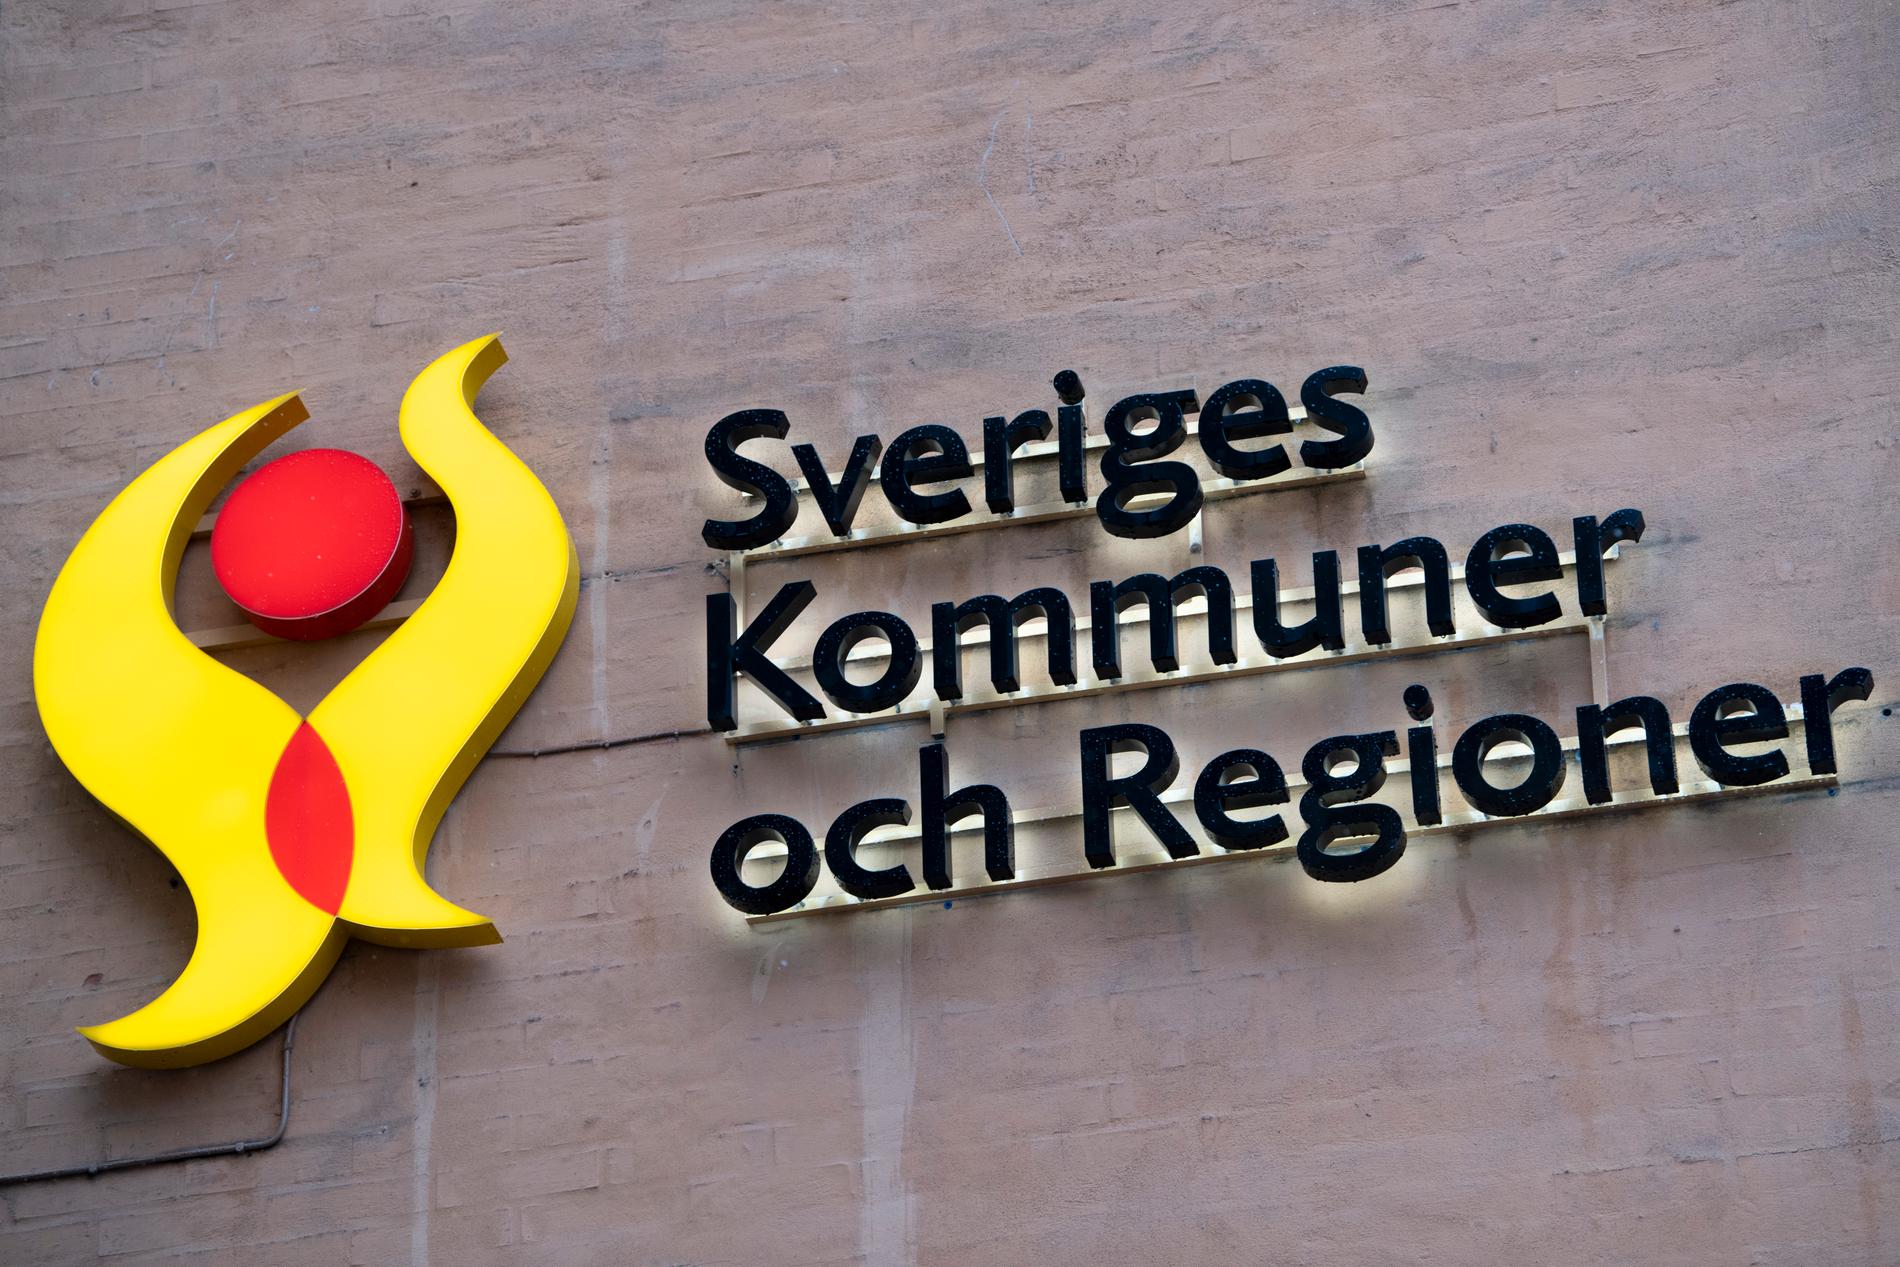 SKR, Sveriges Kommuner och Regioner